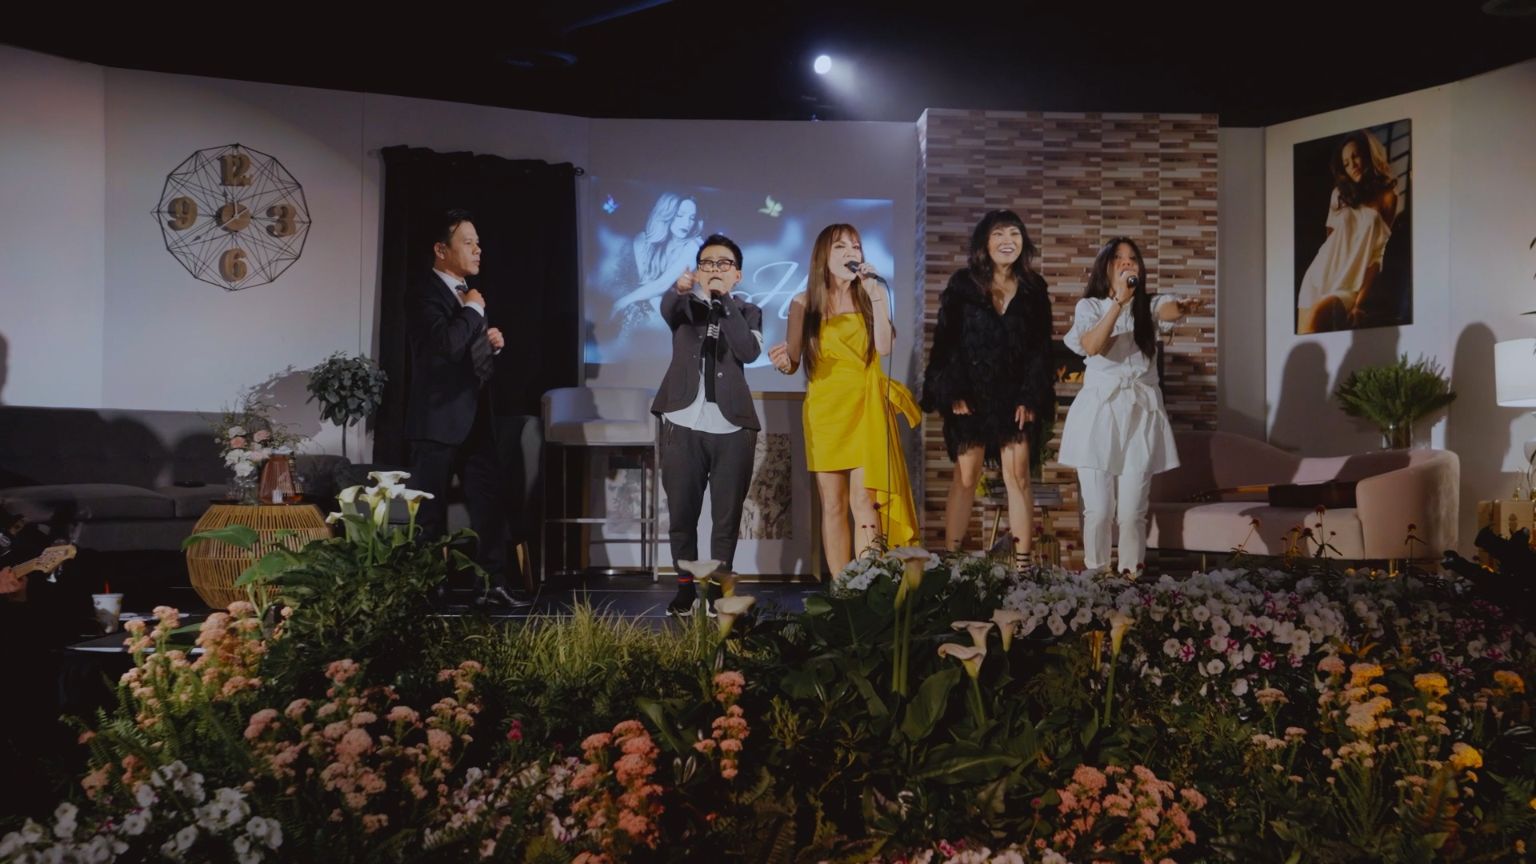 thanh hà 2 Thanh Hà phát hành show diễn kỷ niệm 30 năm ca hát tại Mỹ